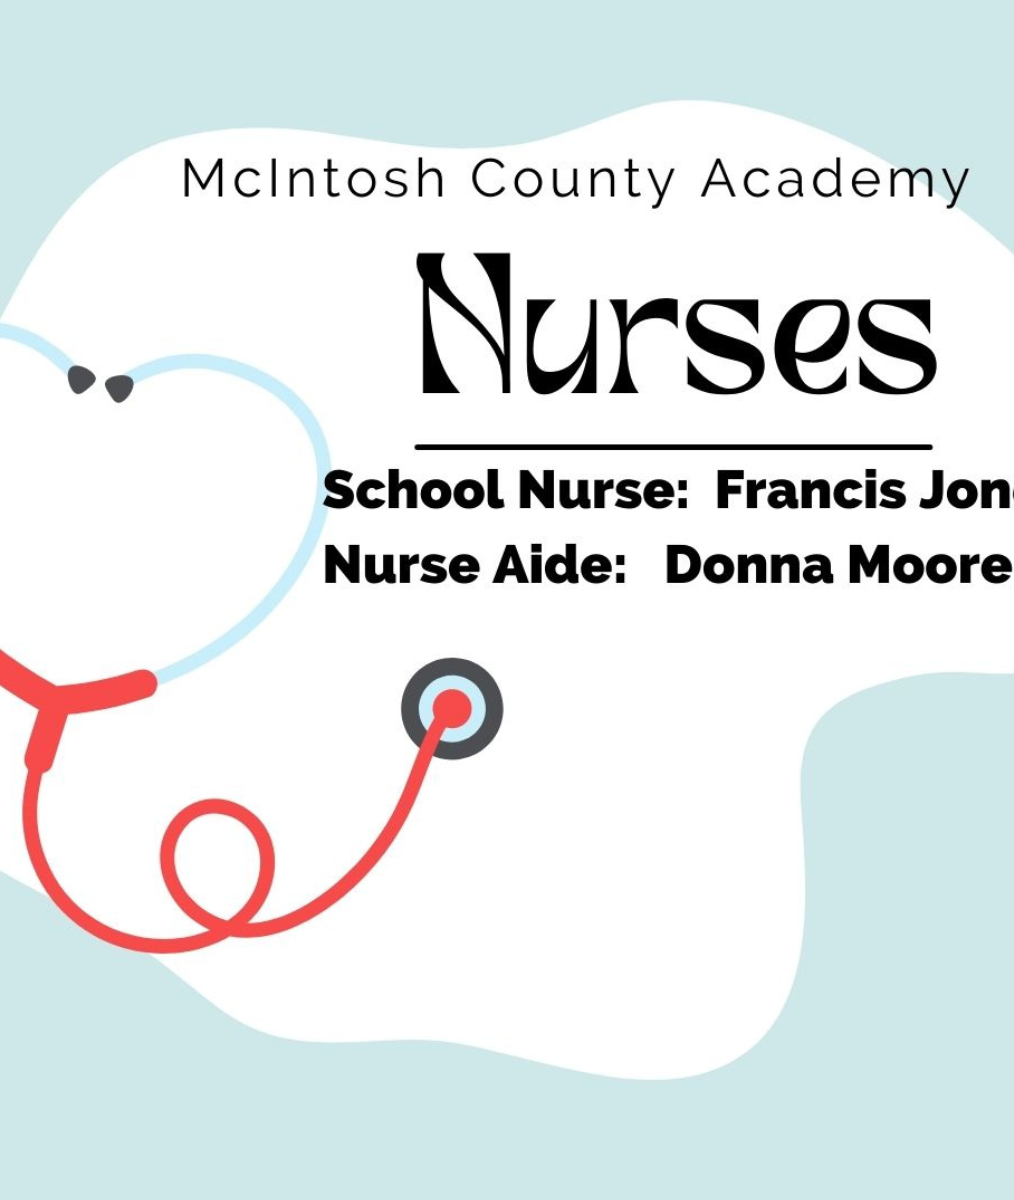 mcintosh county academy nurses school nurse francis jon nurse aide donna moore